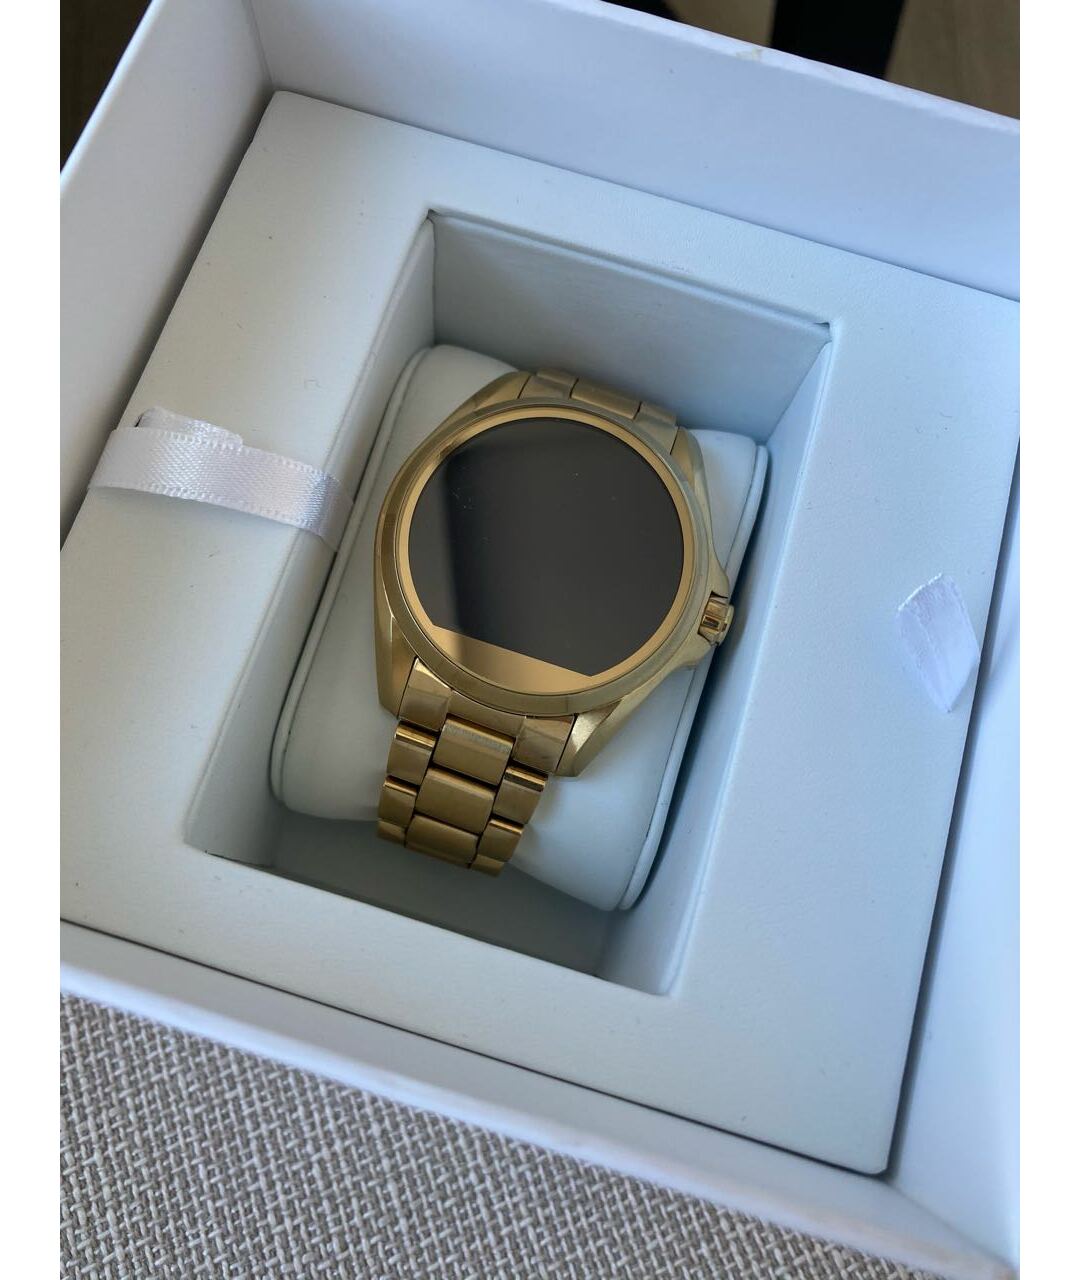 MICHAEL KORS Золотые металлические часы, фото 2